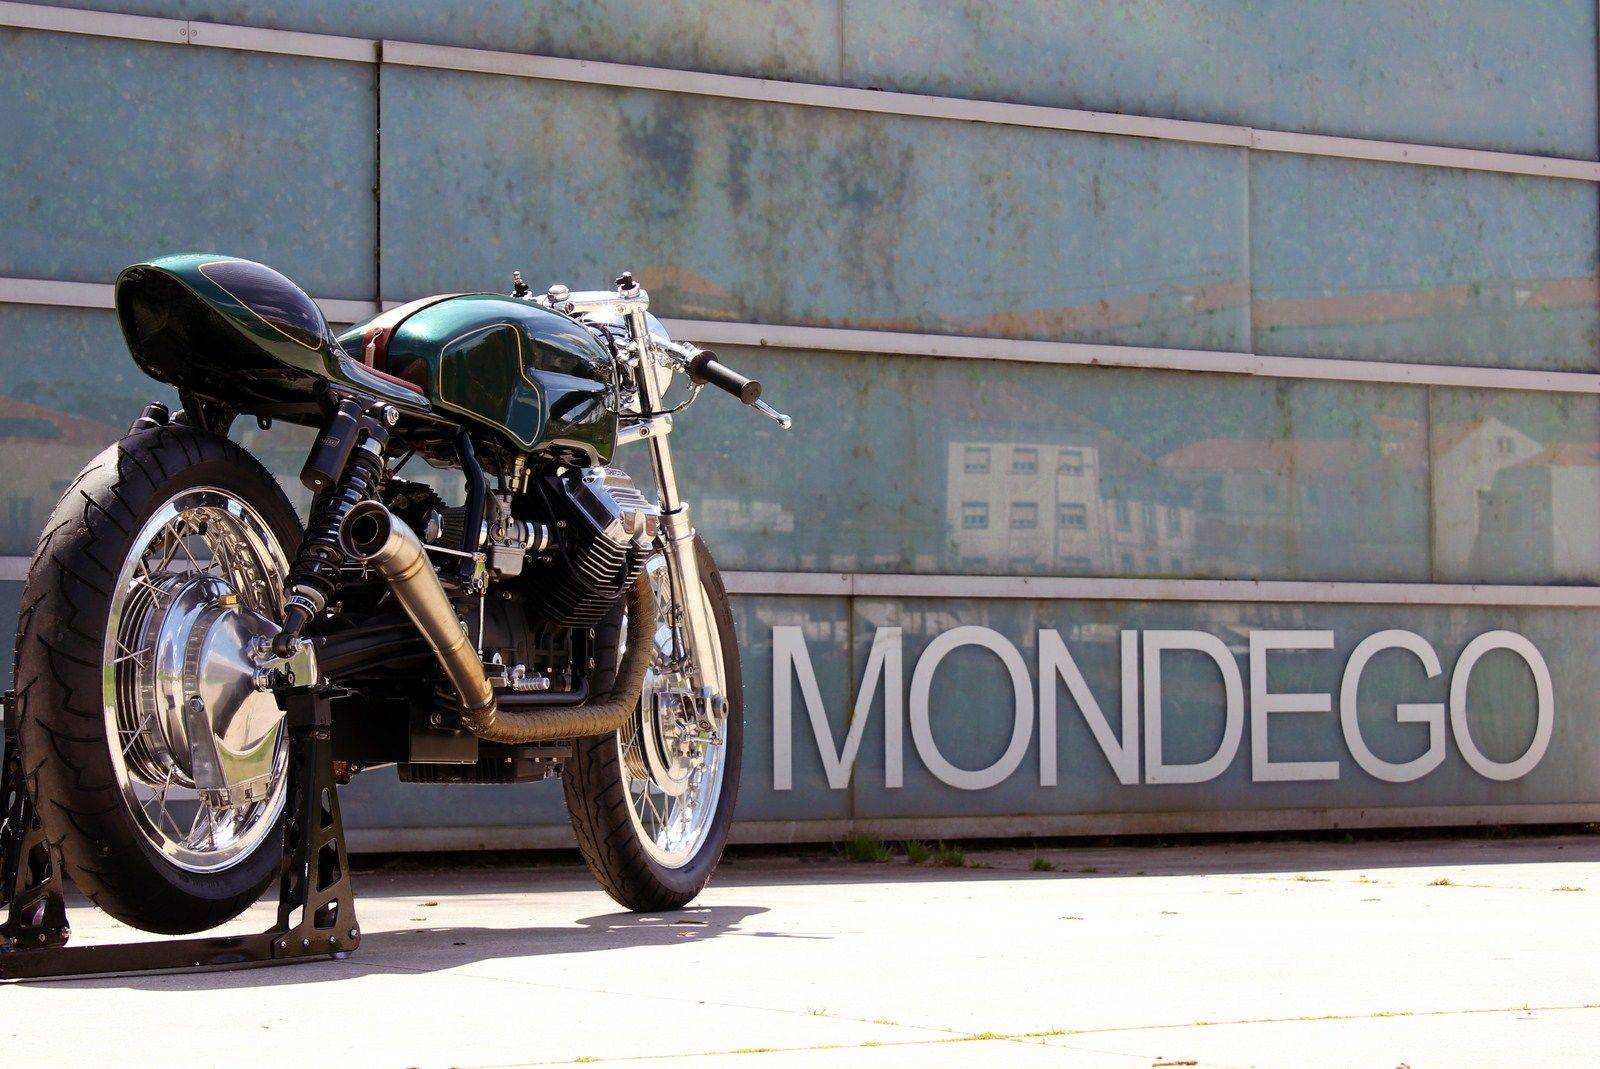 Moto-Guzzi-V65-Mondego - Stone Forest